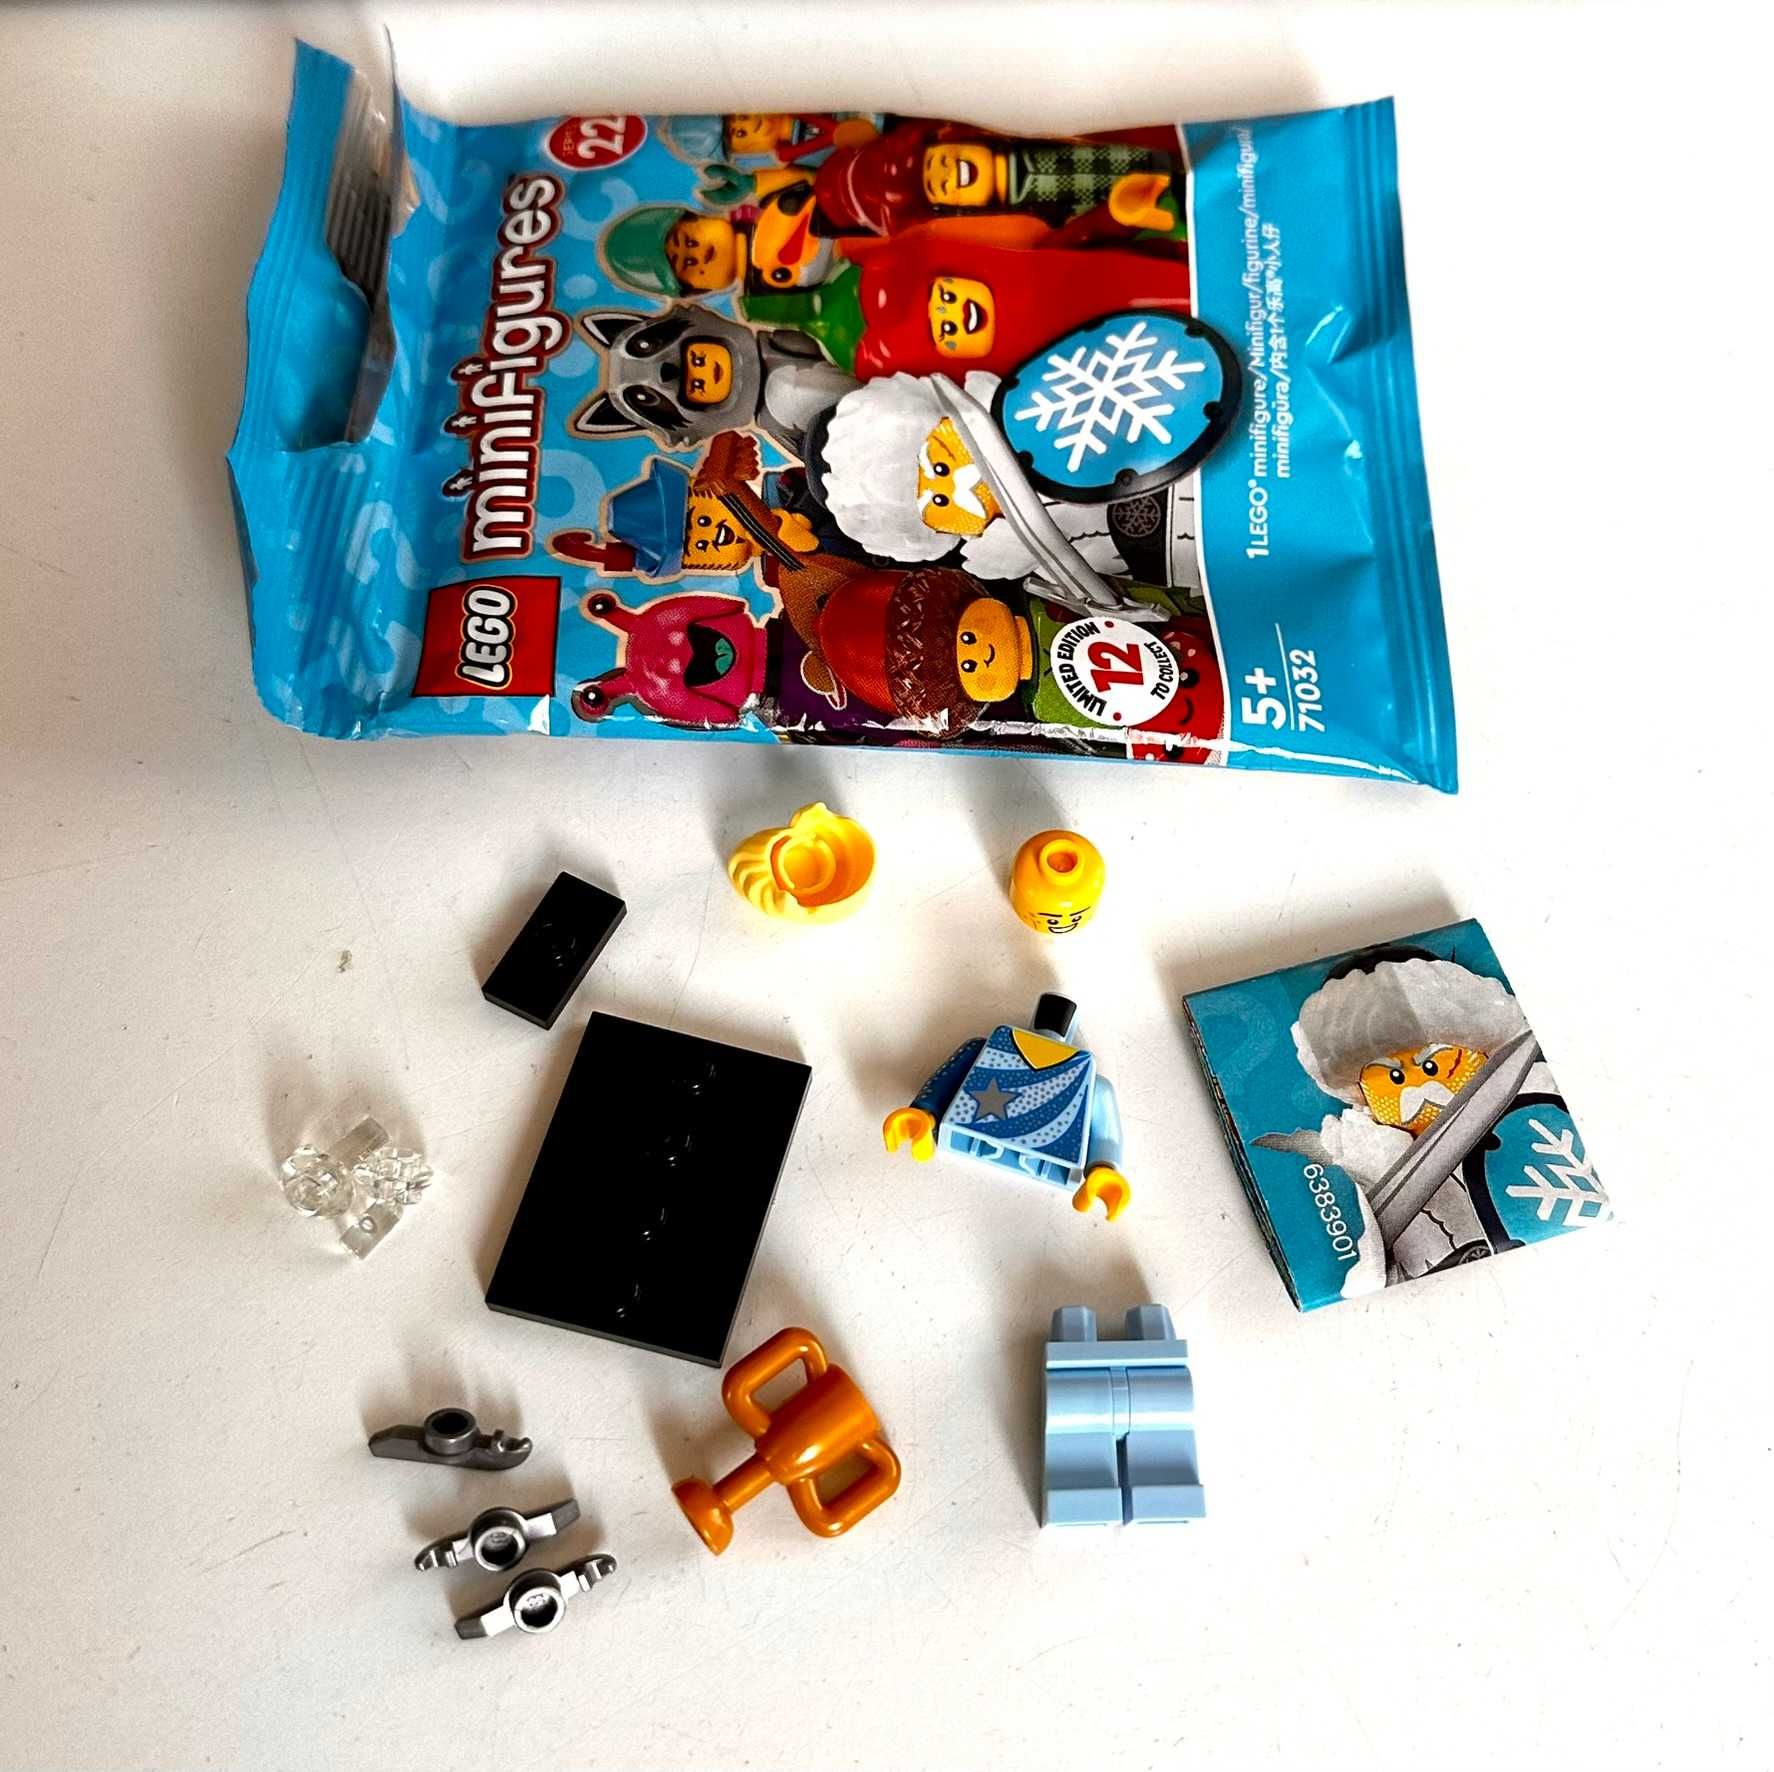 LEGO Minifigures 71032 Seria 22 Łyżwiarz figurowy - nowy